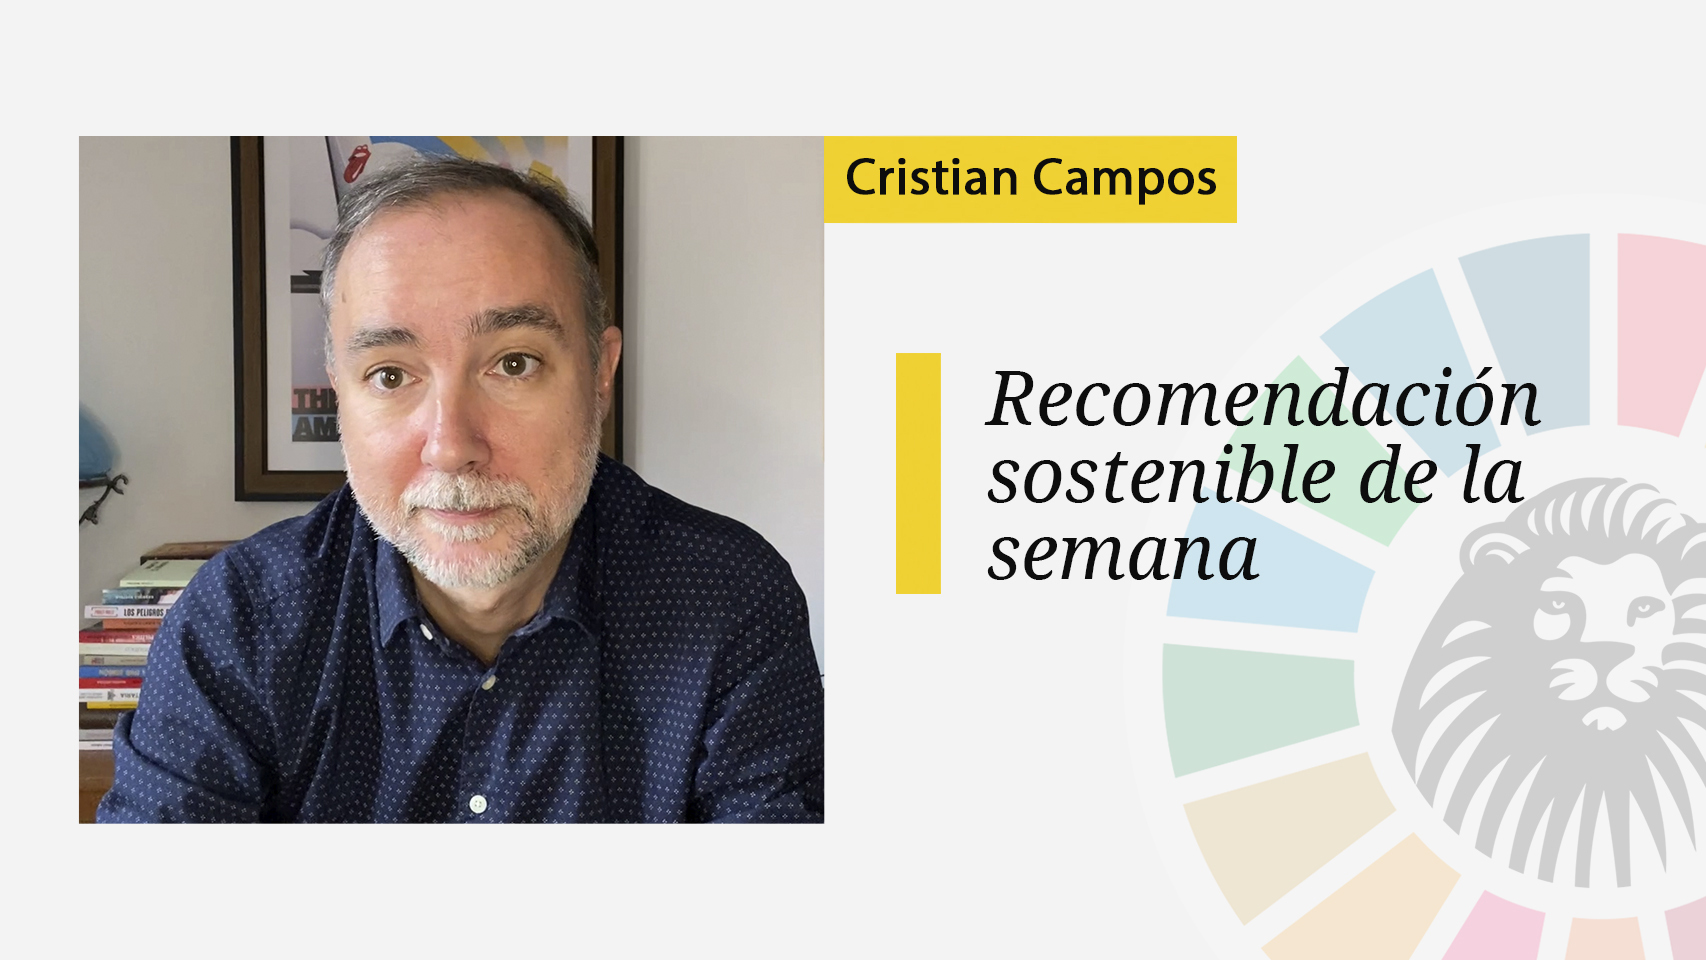 La recomendación sostenible de Cristian Campos